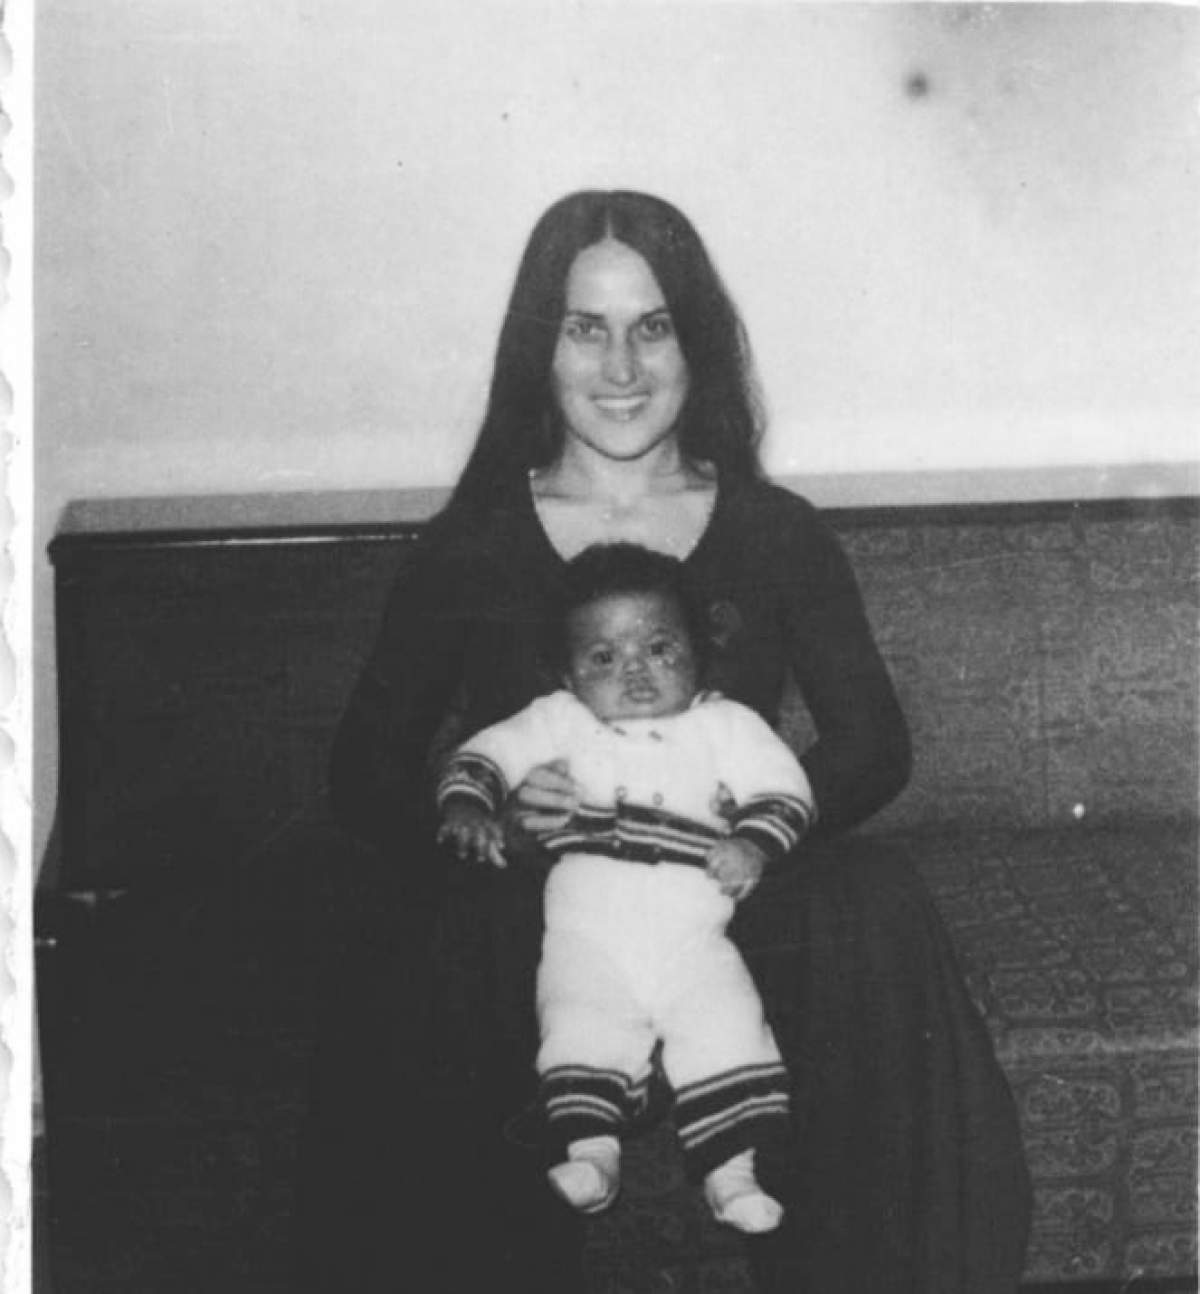 Cabral în copilărie, alături de mama lui